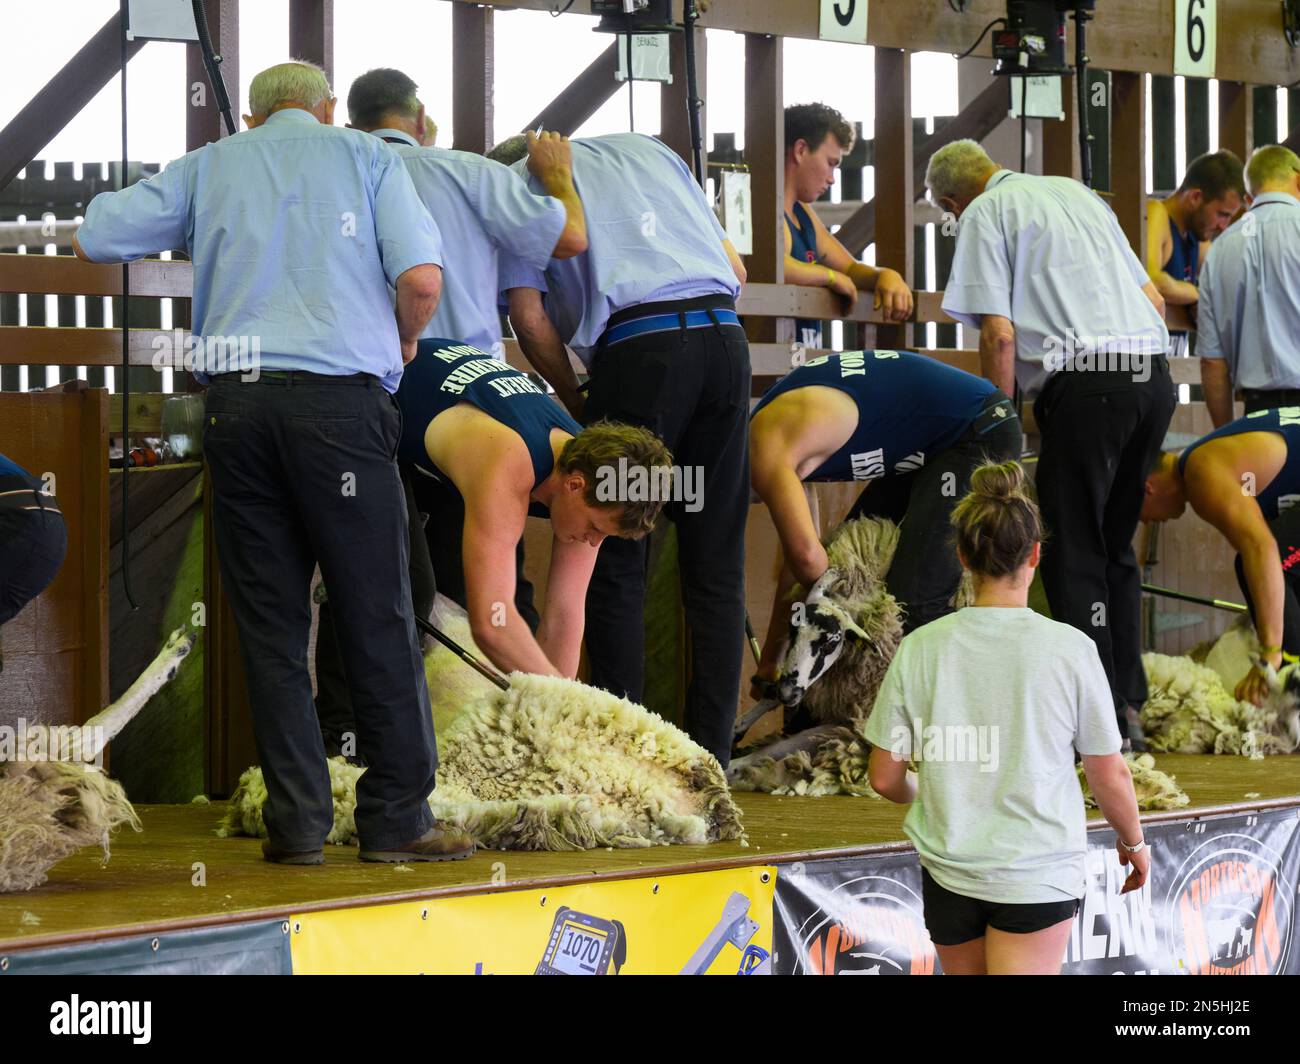 Des haveuses de sexe masculin surveillées par des juges participent au tournoi de tonte de moutons rapides (cisailles mécaniques) - Great Yorkshire Show Shed, Harrogate, Angleterre, Royaume-Uni. Banque D'Images